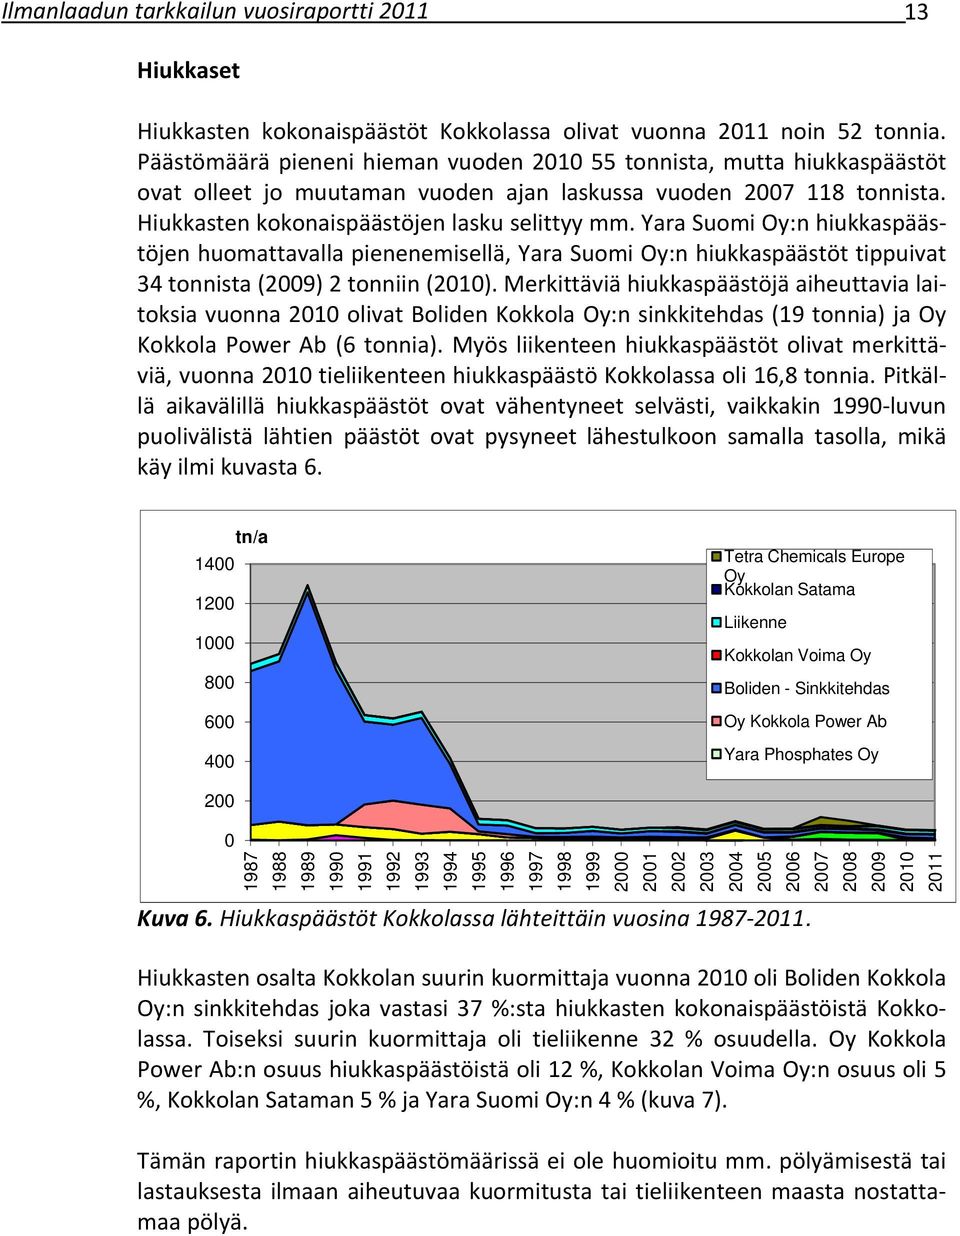 Yara Suomi Oy:n hiukkaspäästöjen huomattavalla pienenemisellä, Yara Suomi Oy:n hiukkaspäästöt tippuivat 34 tonnista (2009) 2 tonniin (2010).